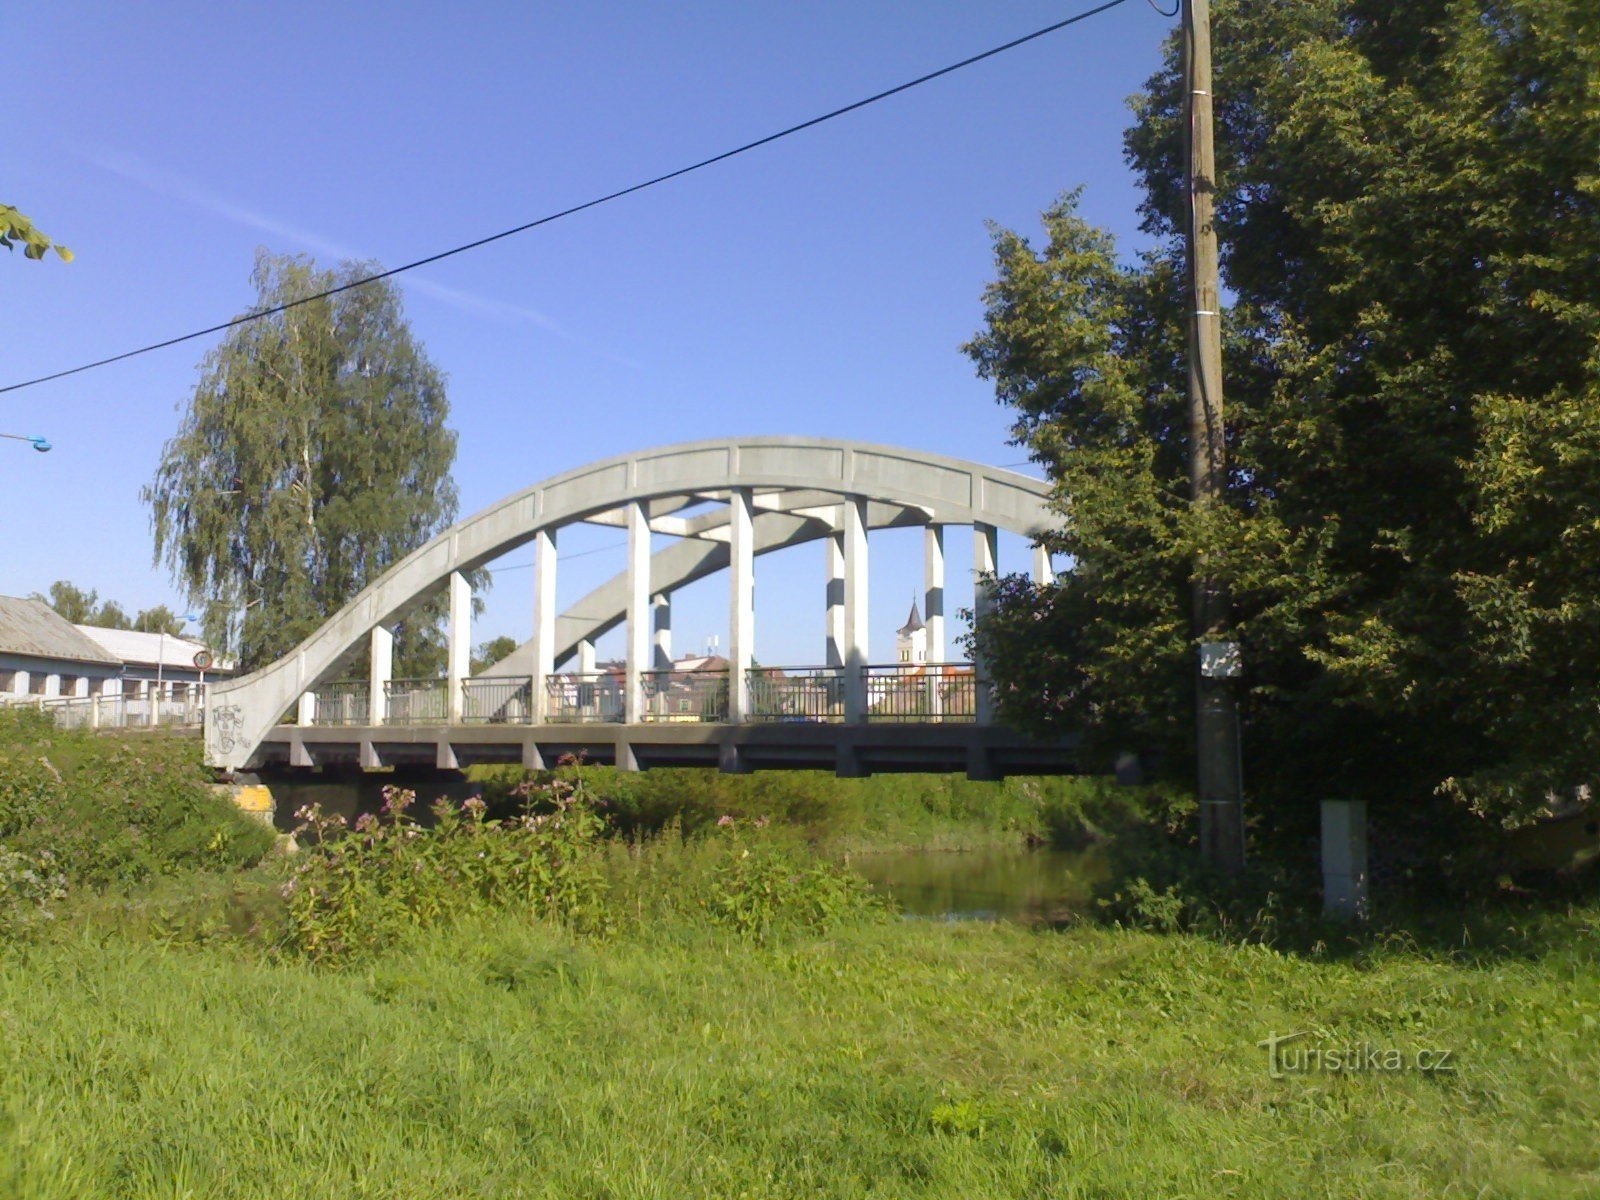 Týniště nad Orlicí - most nad Orlicí